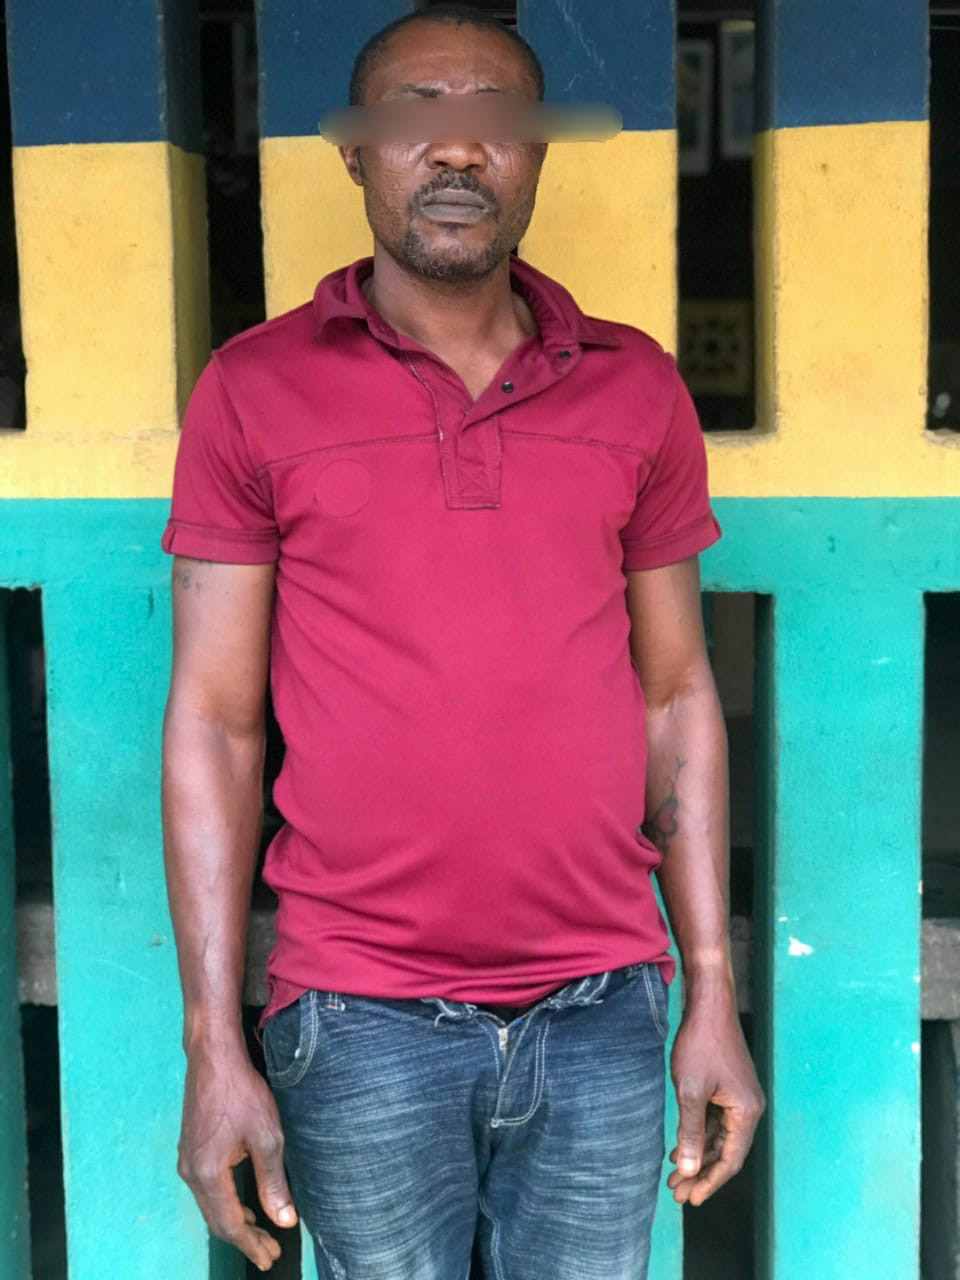 Um homem de 40 anos identificado como Taofeek Sulaiman foi preso na segunda-feira, 24 de outubro, por homens do Comando da Polícia do Estado de Ogun por ter conhecimento carnal ilegal de sua enteada de 13 anos (nome omitido).